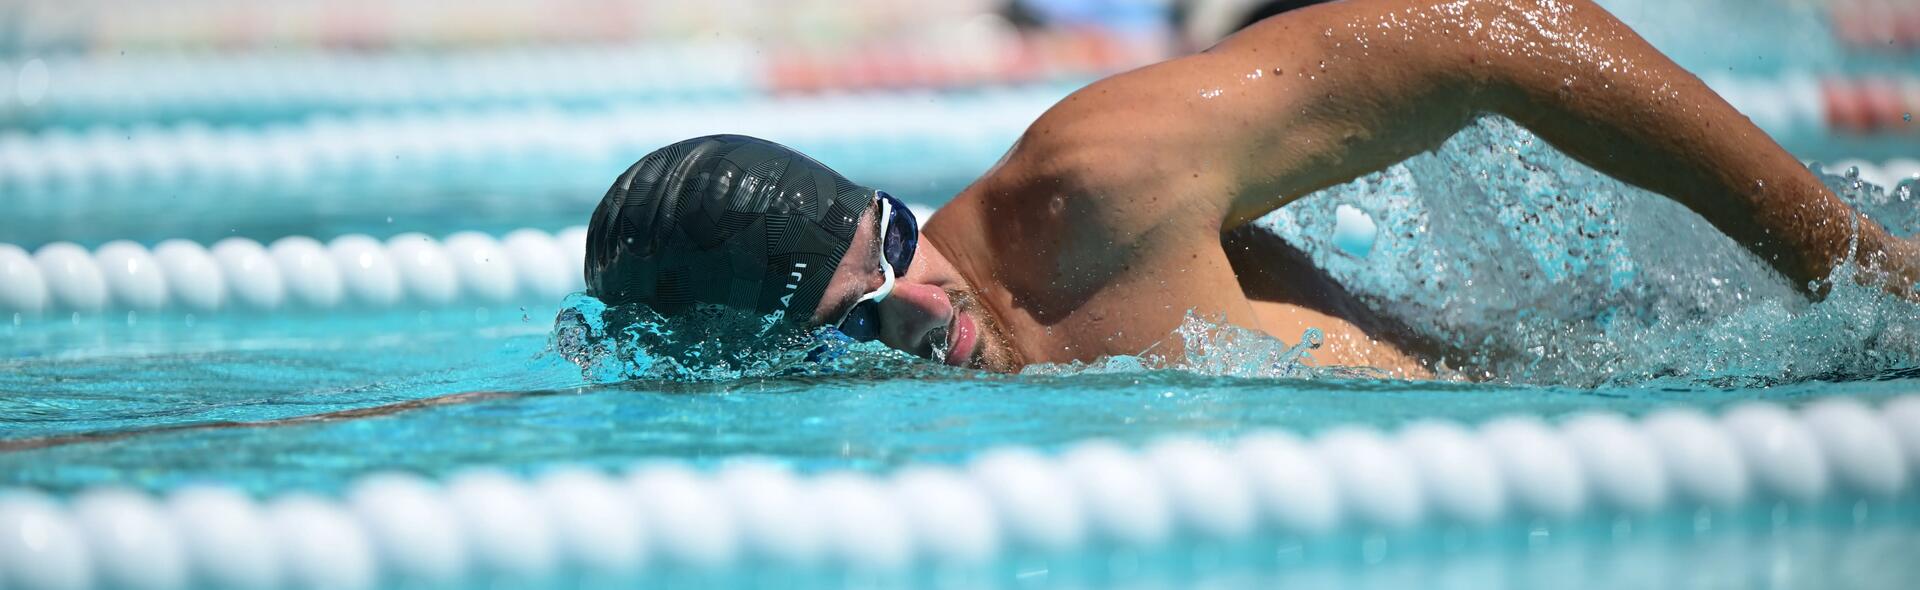 mężczyzna w czepku kąpielowym i okularach pływackich wykonujący trening szybkościowy